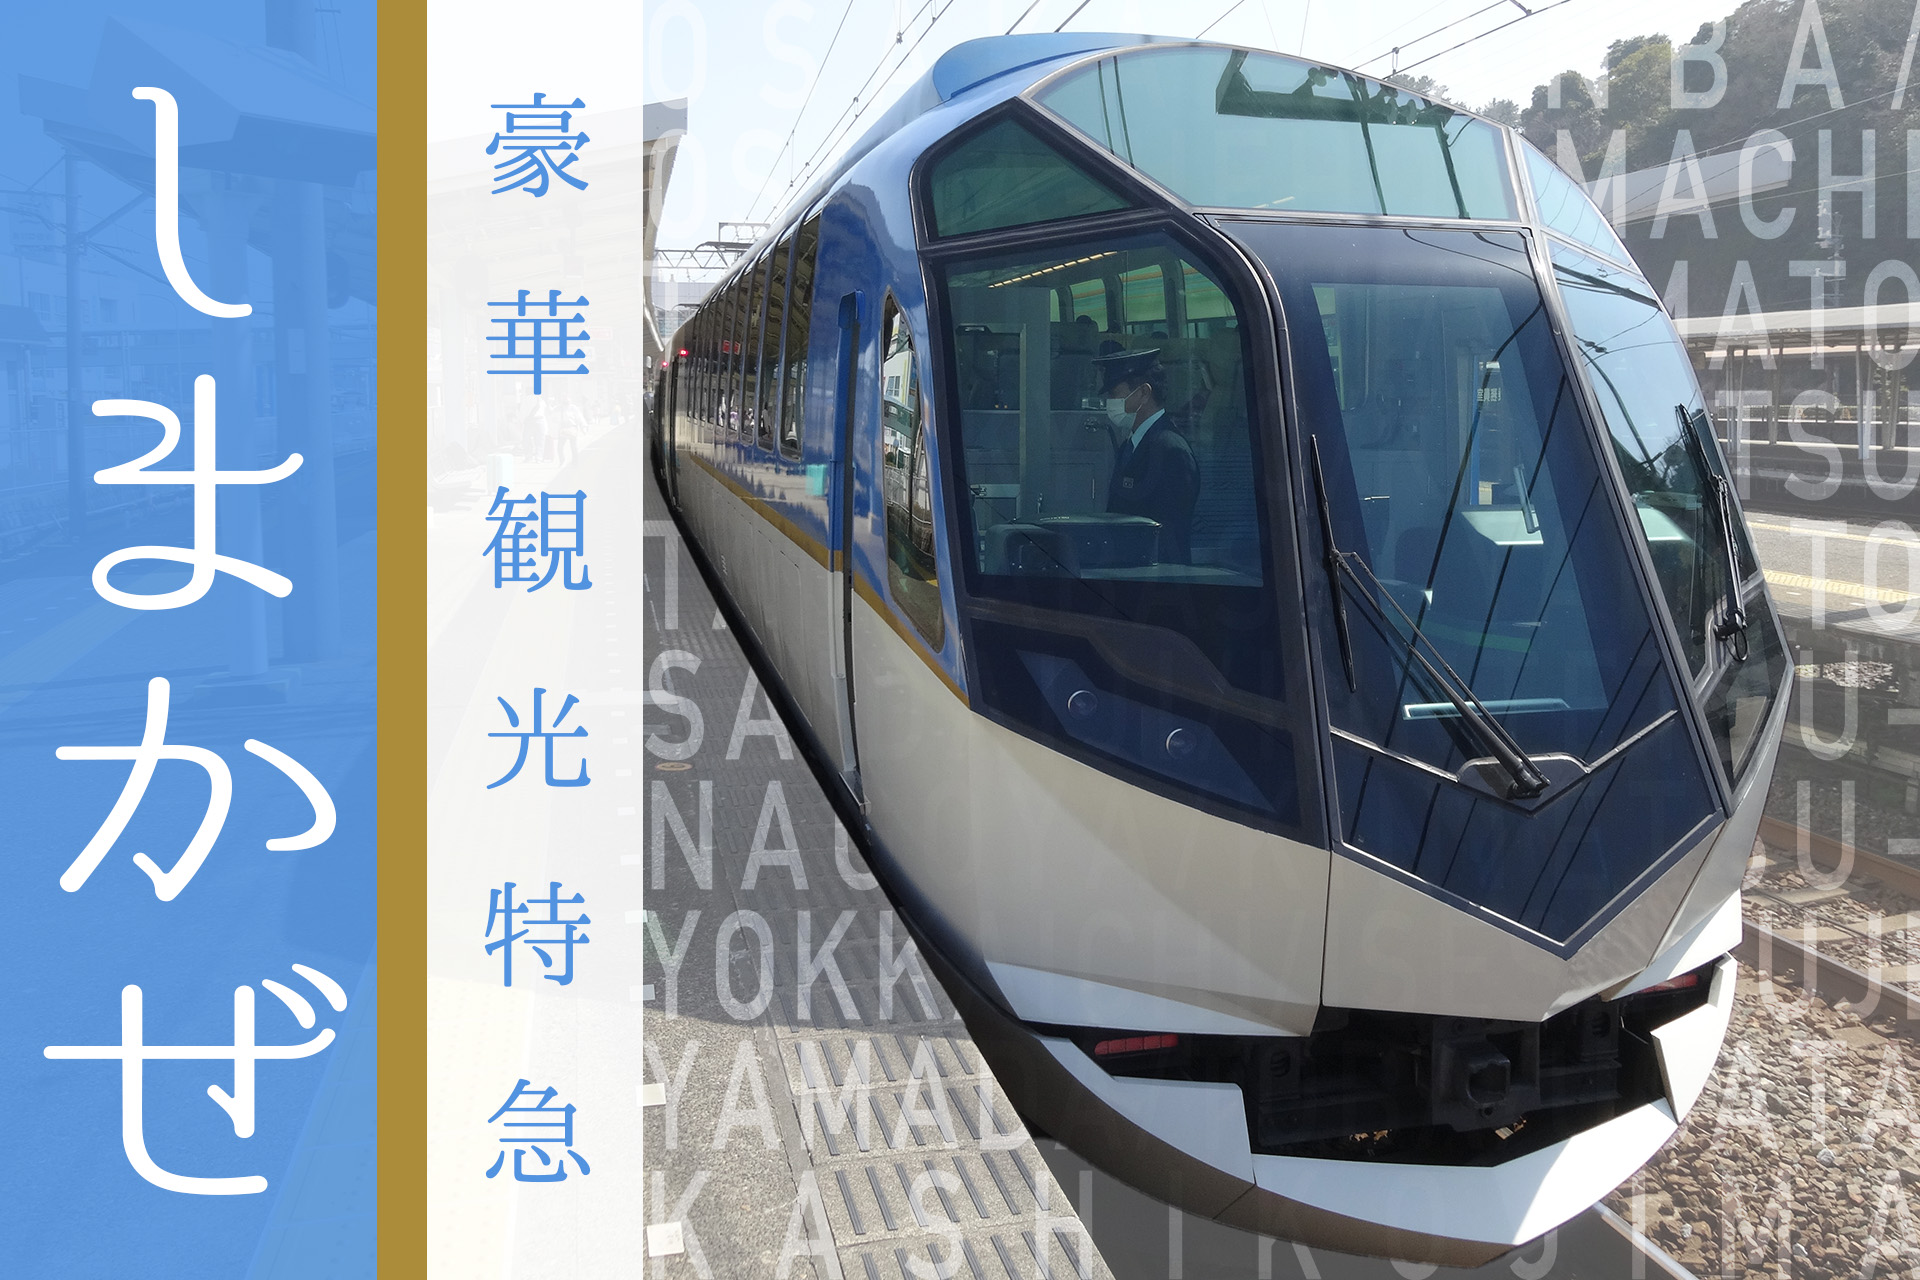 伊勢志摩への旅を贅沢にする、近鉄の豪華観光特急「しまかぜ」乗車レポート